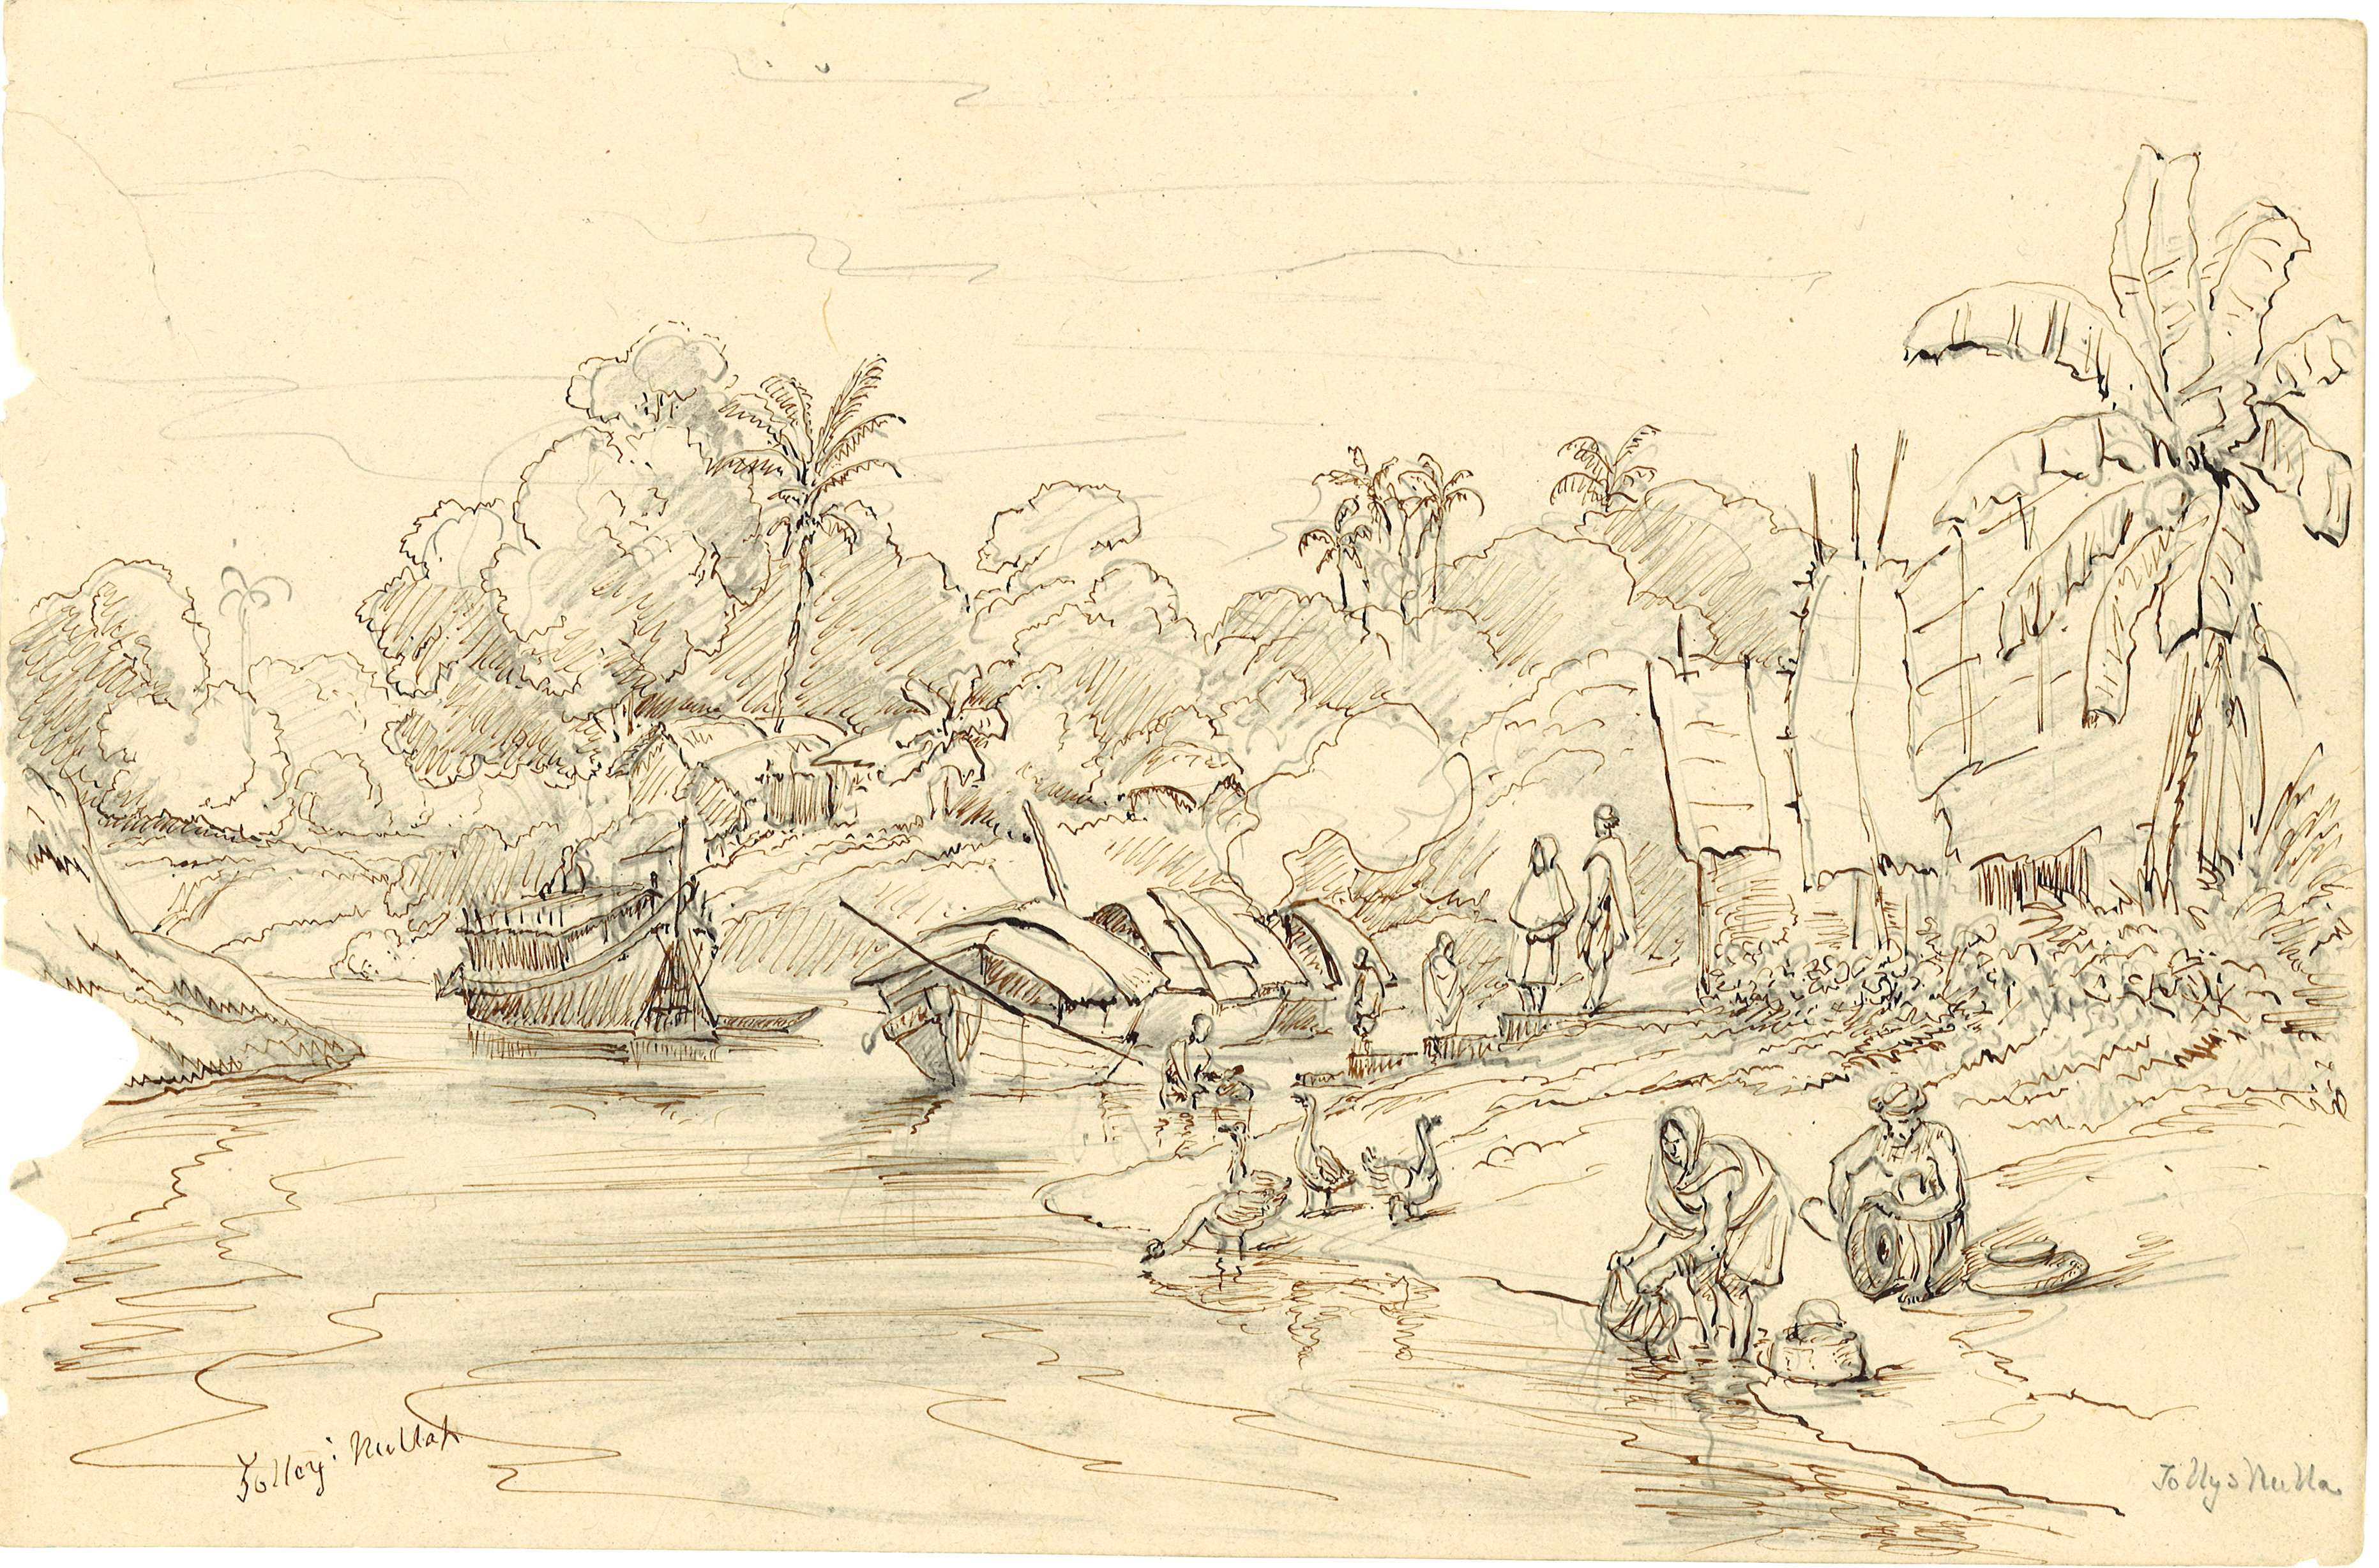 Tolly's Nullah [West Bengal, India], around 1837 / [William Prinsep]